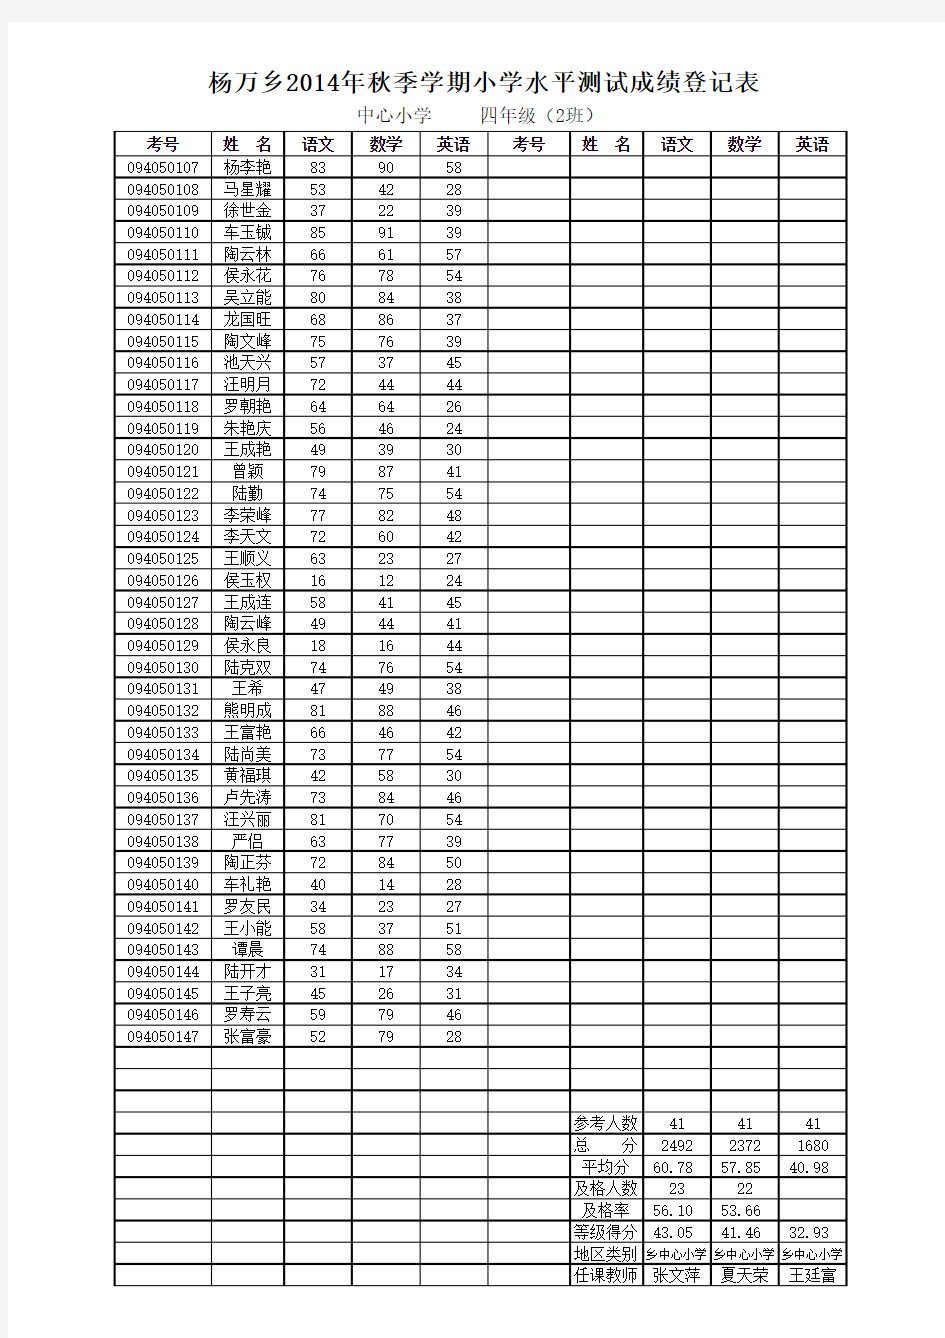 副本2014年秋季学期学生成绩统计表 (1)